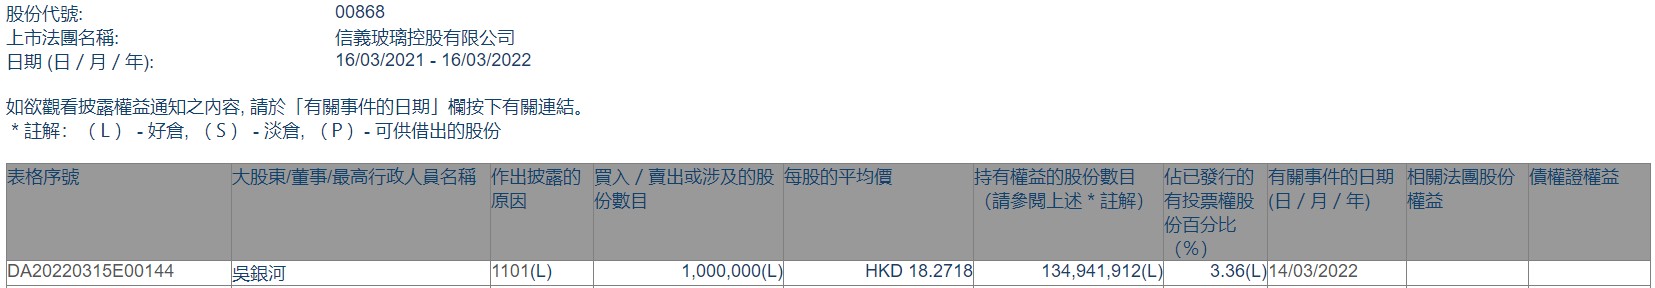 非执行董事吴银河增持信义玻璃(00868)100万股 每股作价约18.27港元